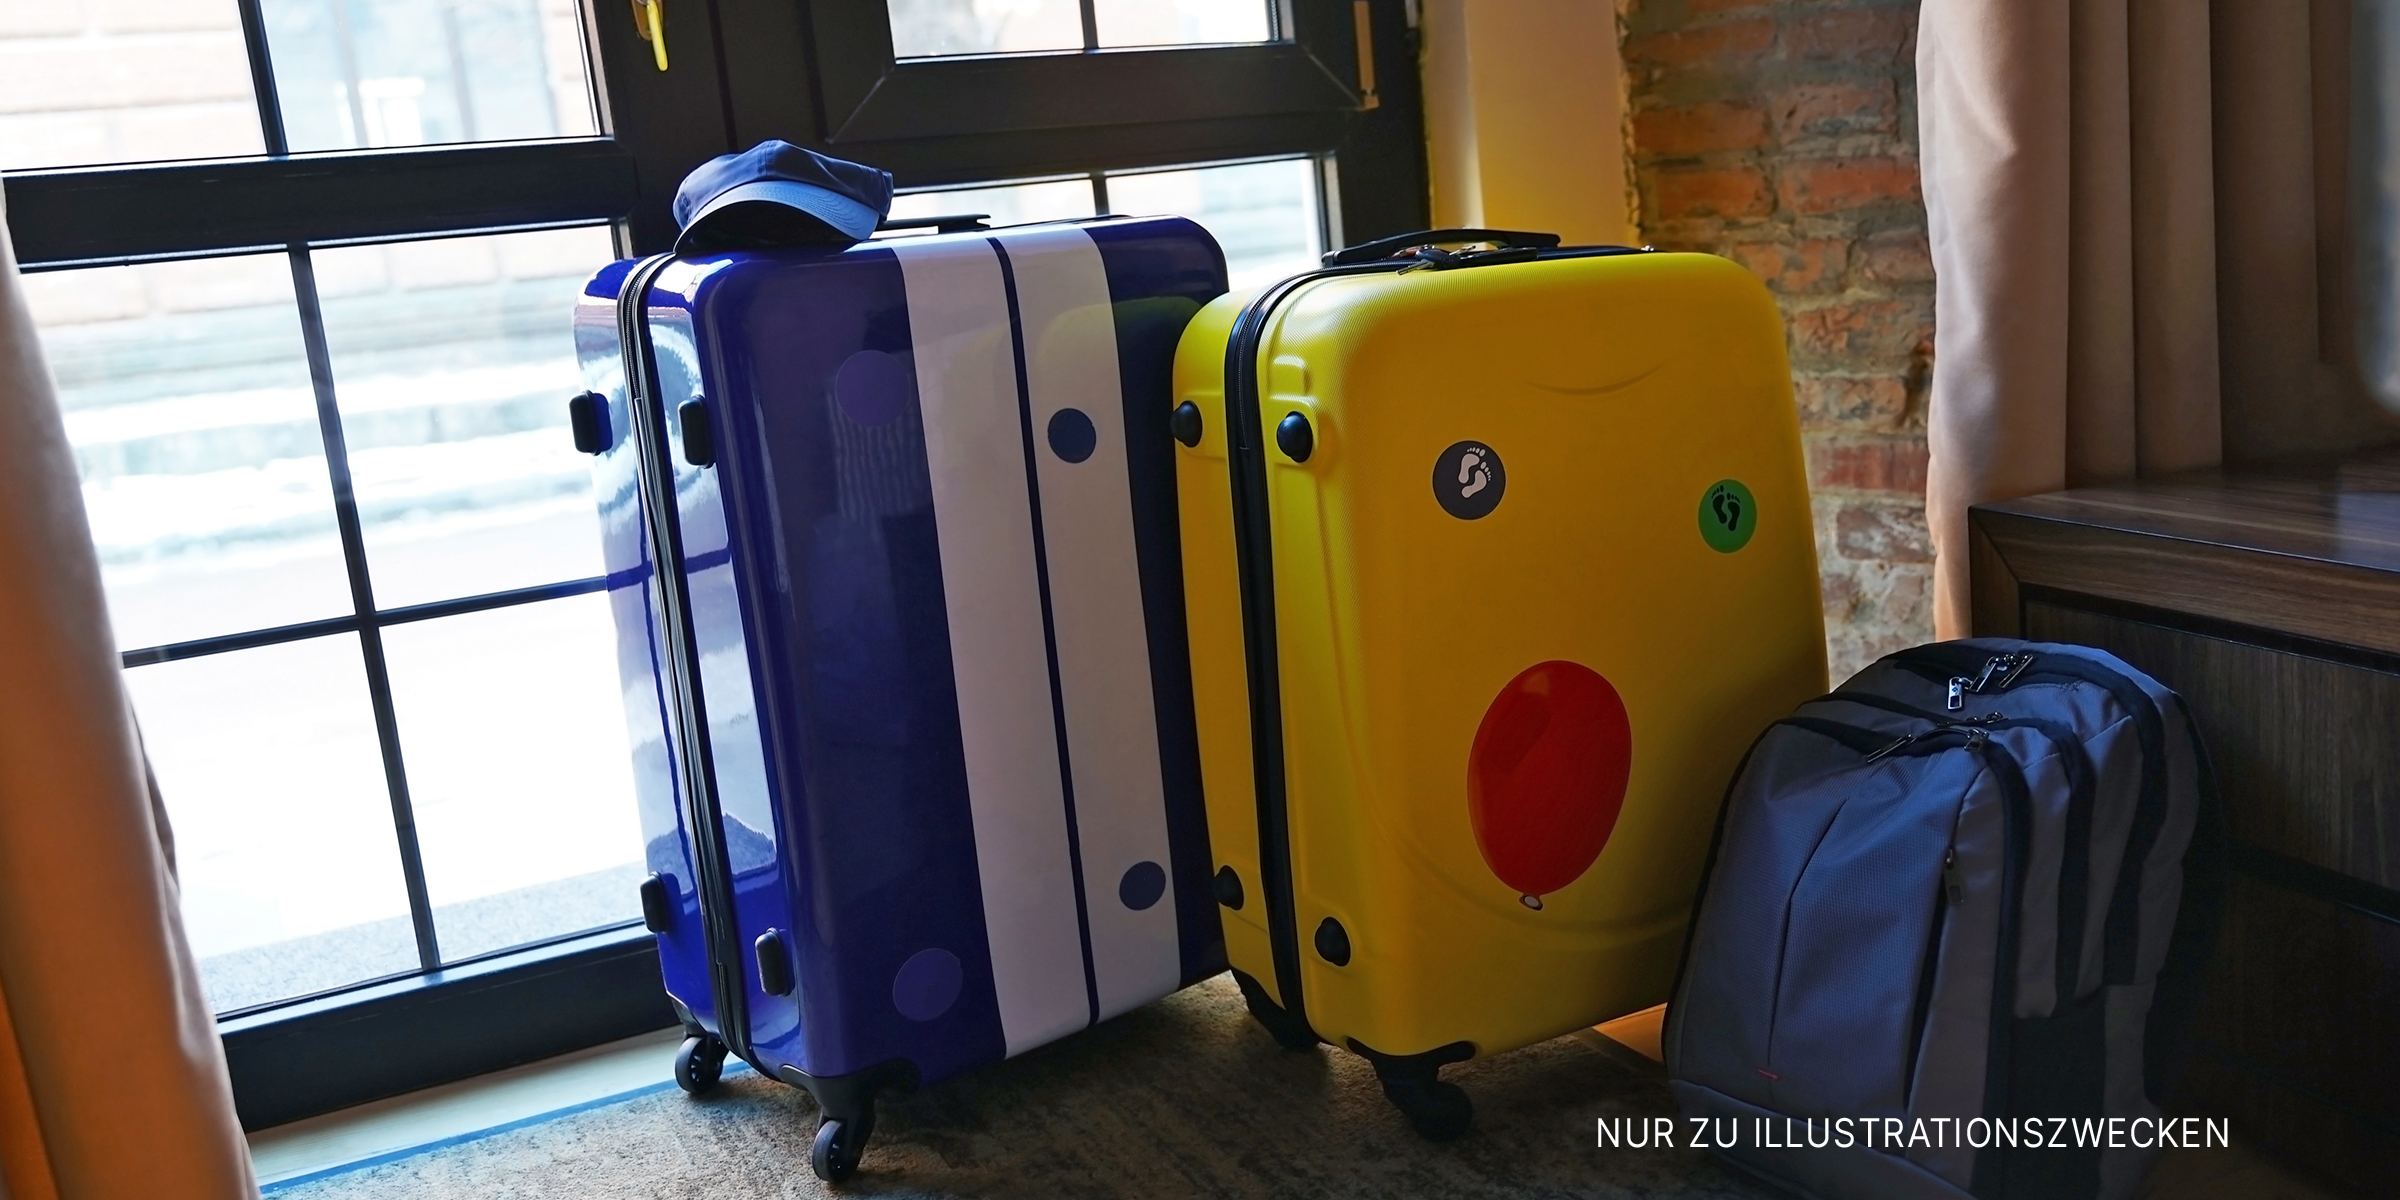 Drei Koffer in der Nähe eines Hauseingangs | Quelle: Shutterstock